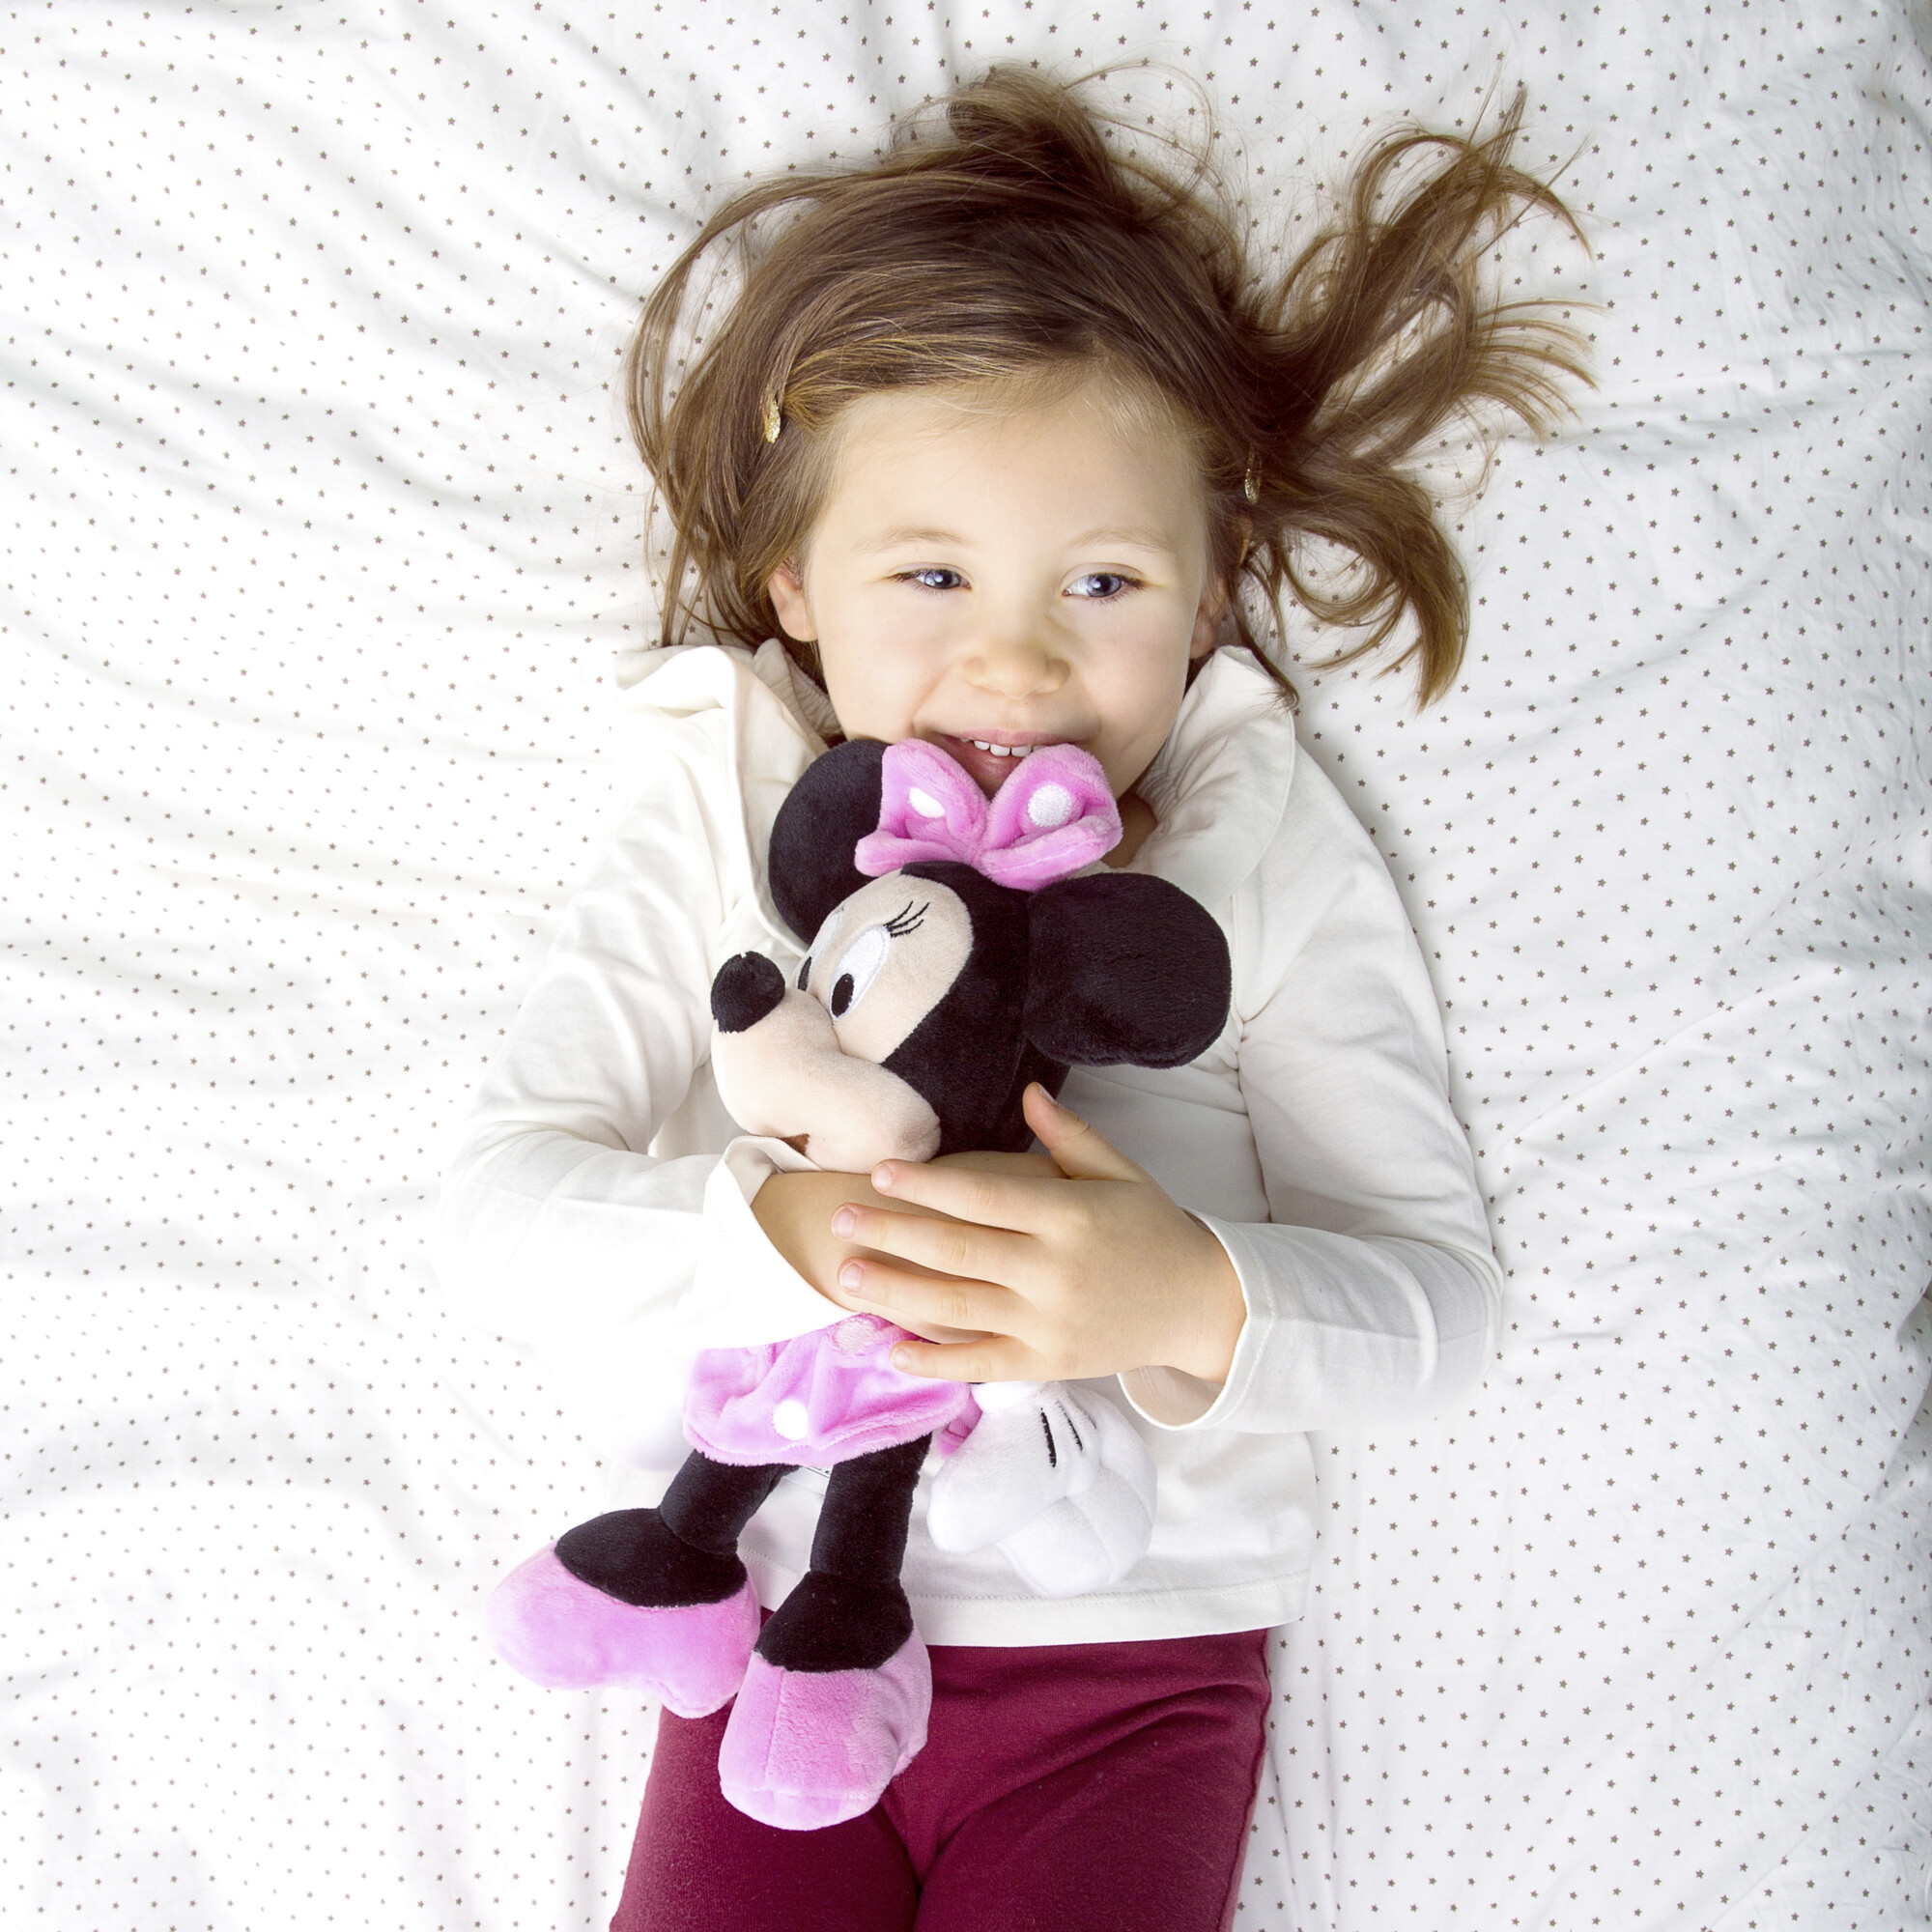 Disney plush di minnie da 25 cm perfetto sin dai primi mesi di vita del bambino - Minnie